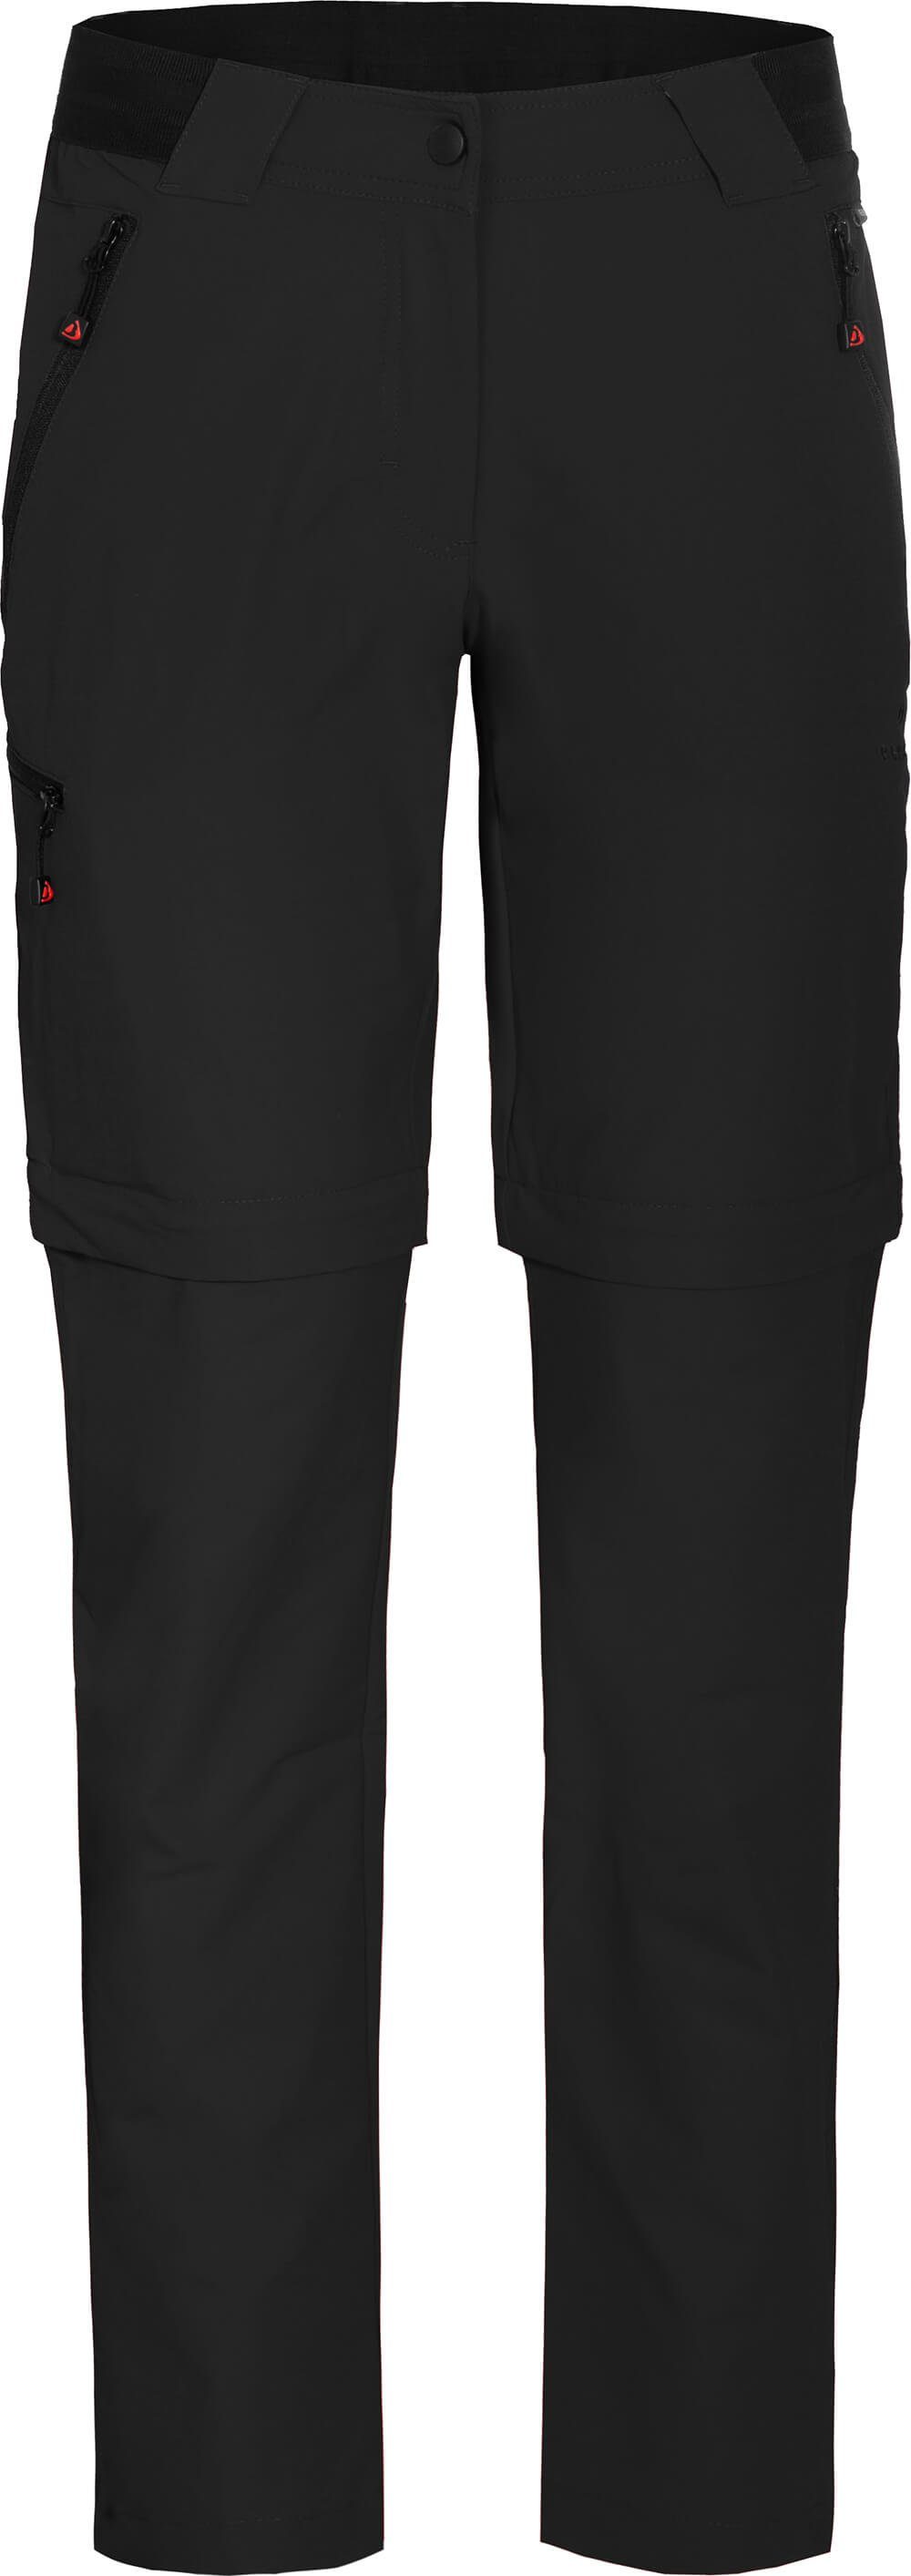 Wanderhose, VIDAA Zip-off-Hose Zipp-Off COMFORT strapazierfähig, schwarz leicht, Langgrößen, Bergson Damen